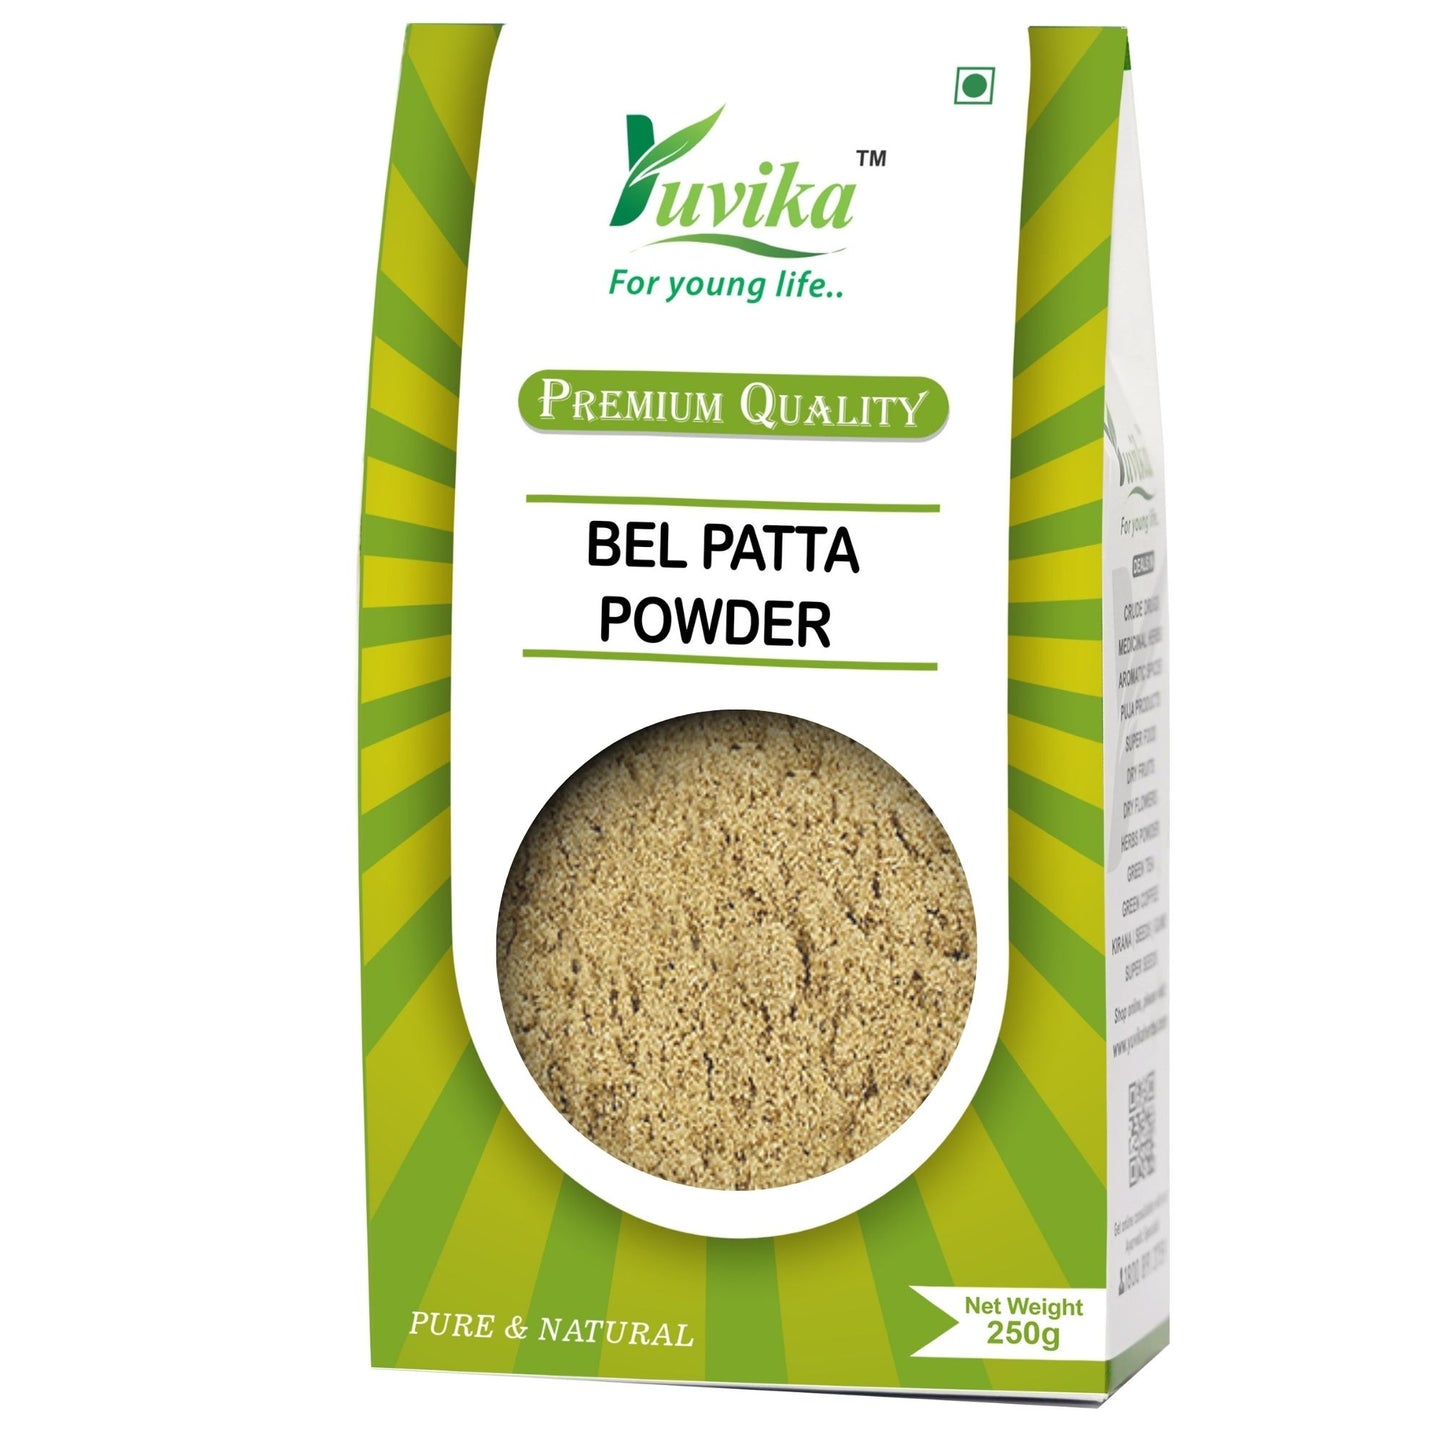 Bel Patta Powder - Bel Patra Powder - Bilva Bel Leaf - Aegle Marmelos Powder (250g)